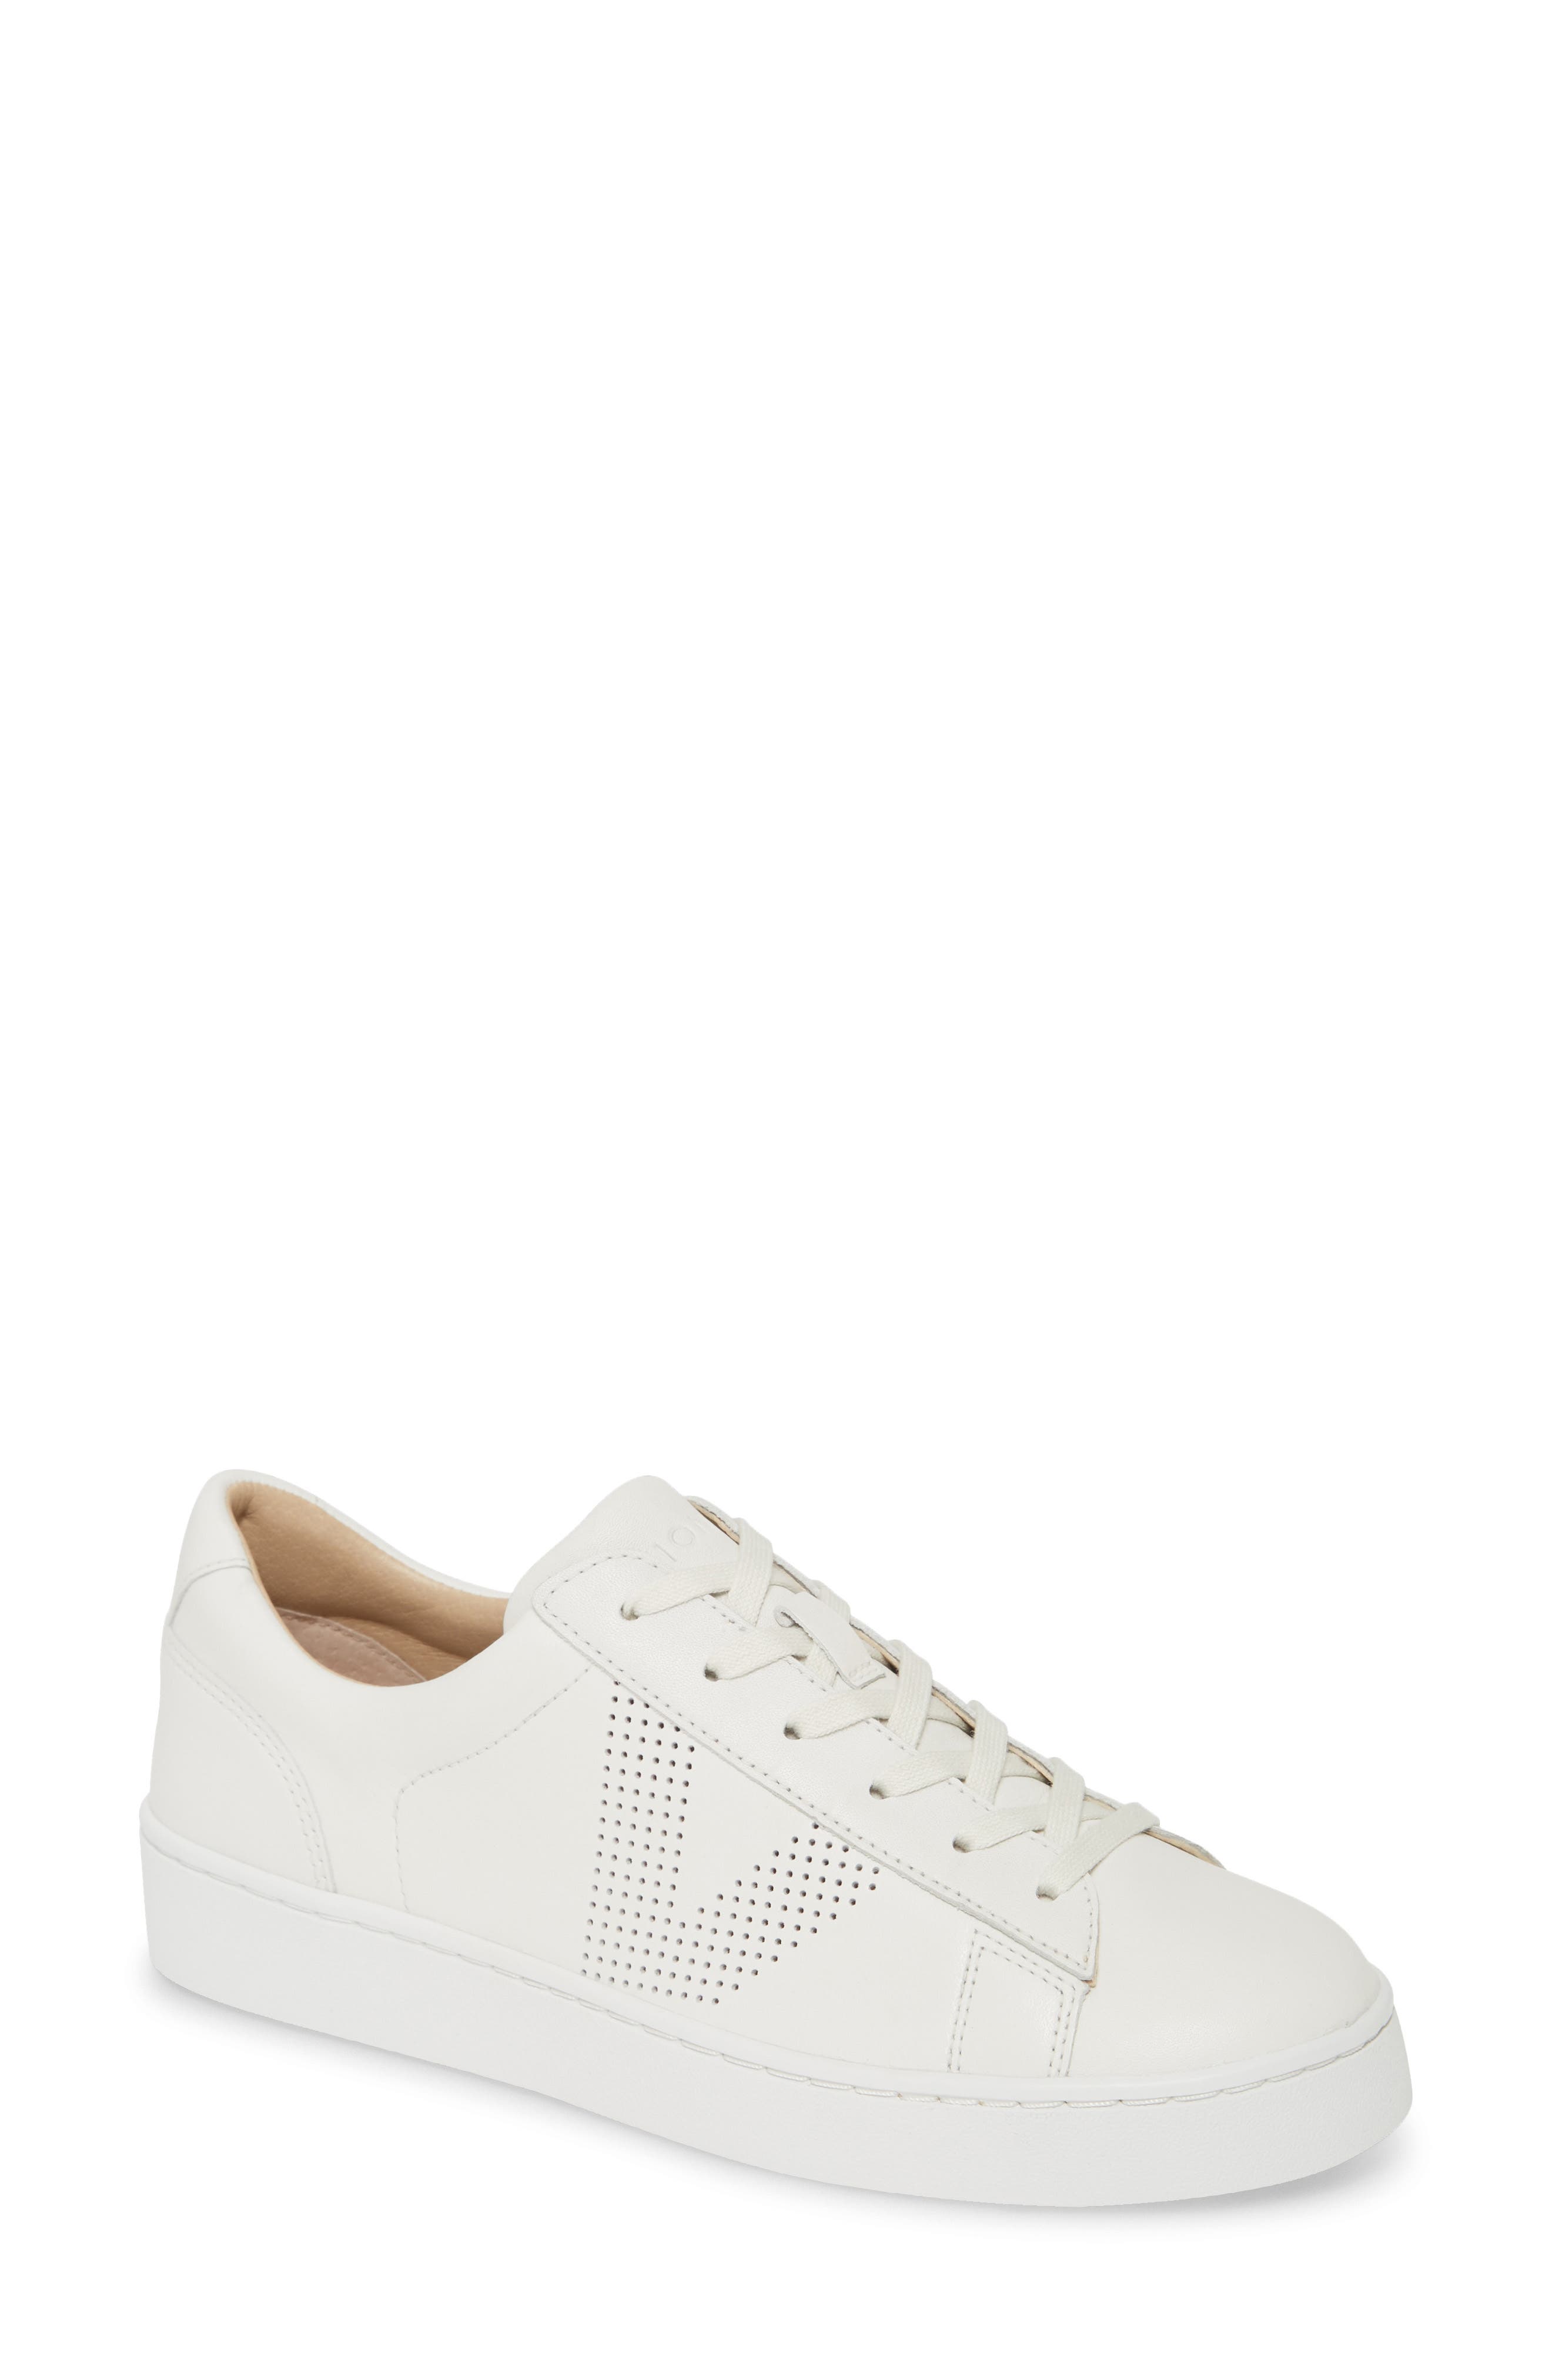 vionic white tennis shoes